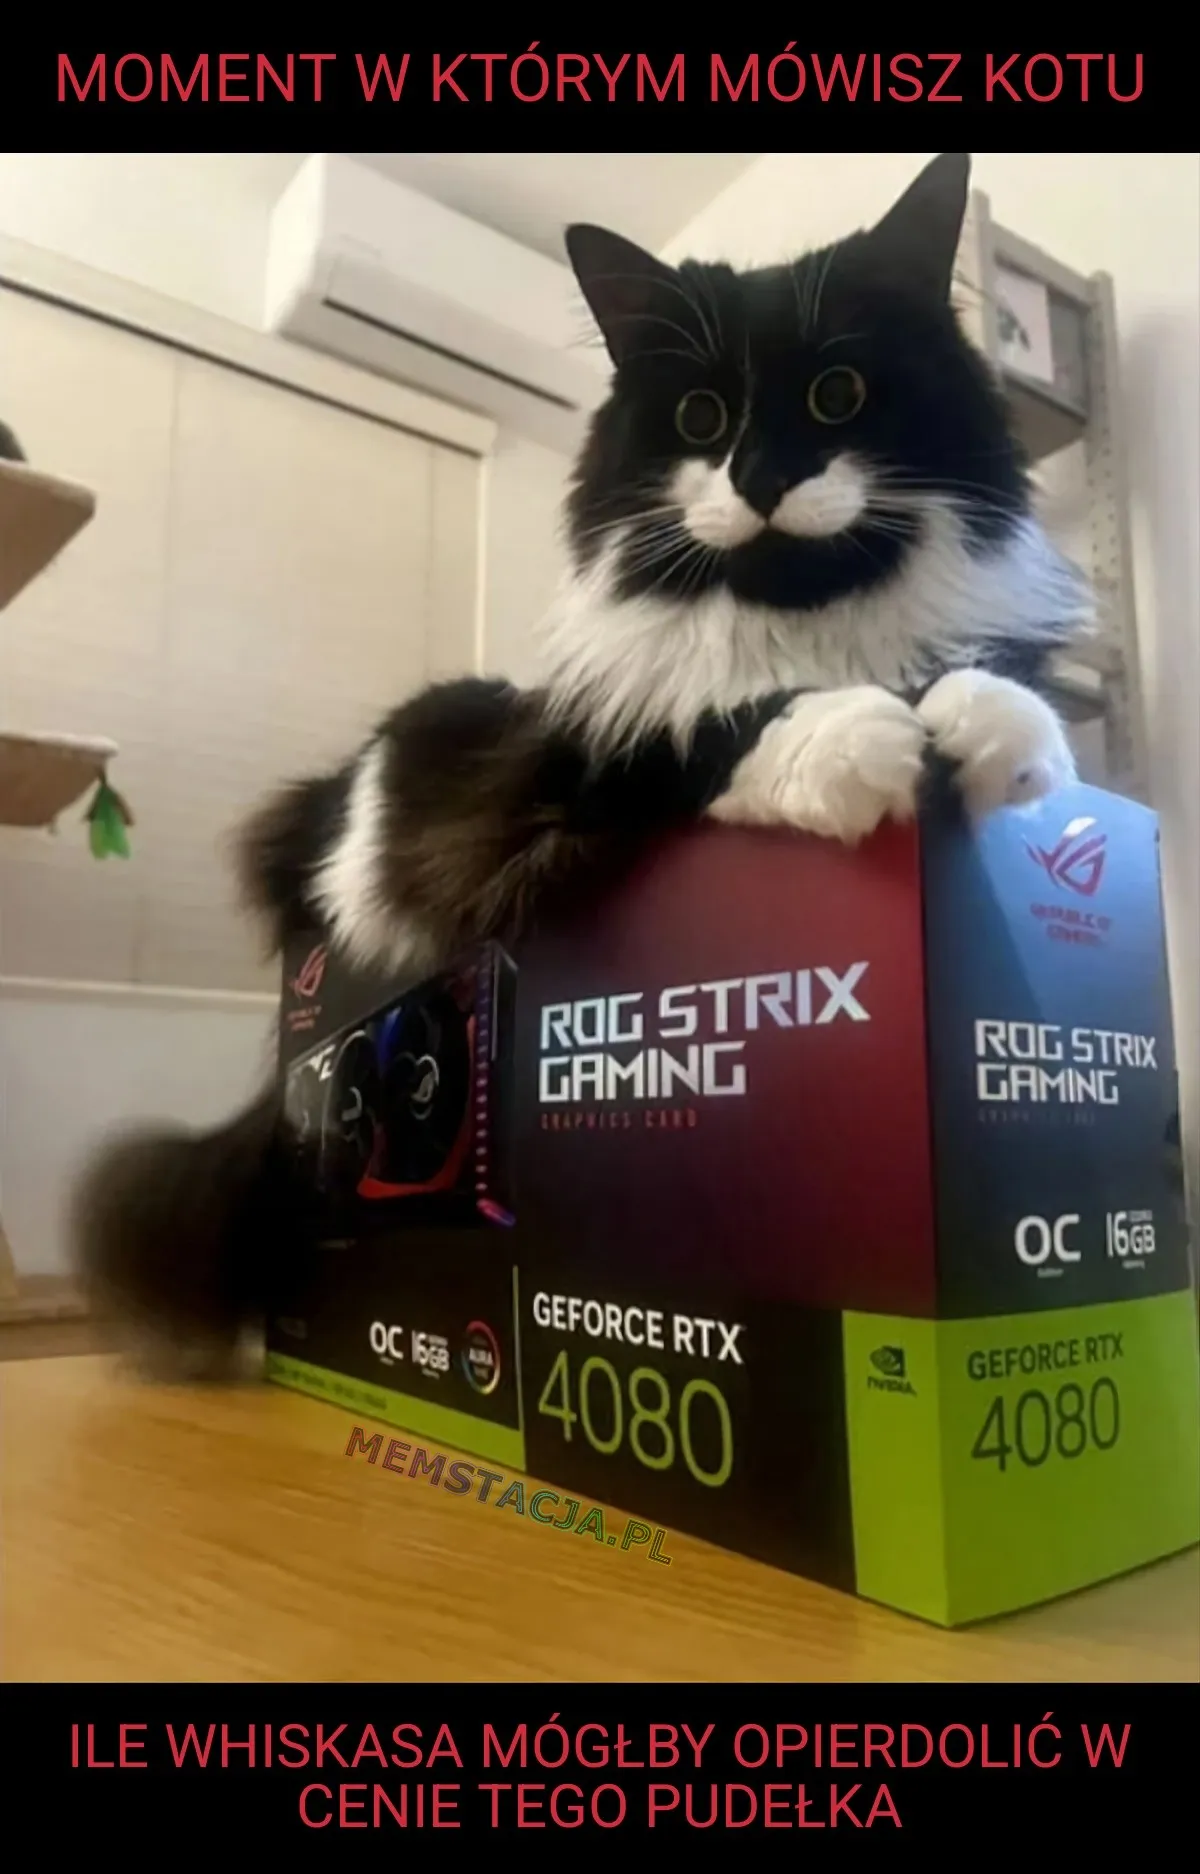 Mem przedstawiający zdziwionego kota, który leży na pudełku z RTX 4080: 'Moment w którym mówisz kotu ile whiskasa mógłby opie*dolić w cenie tego pudełka'